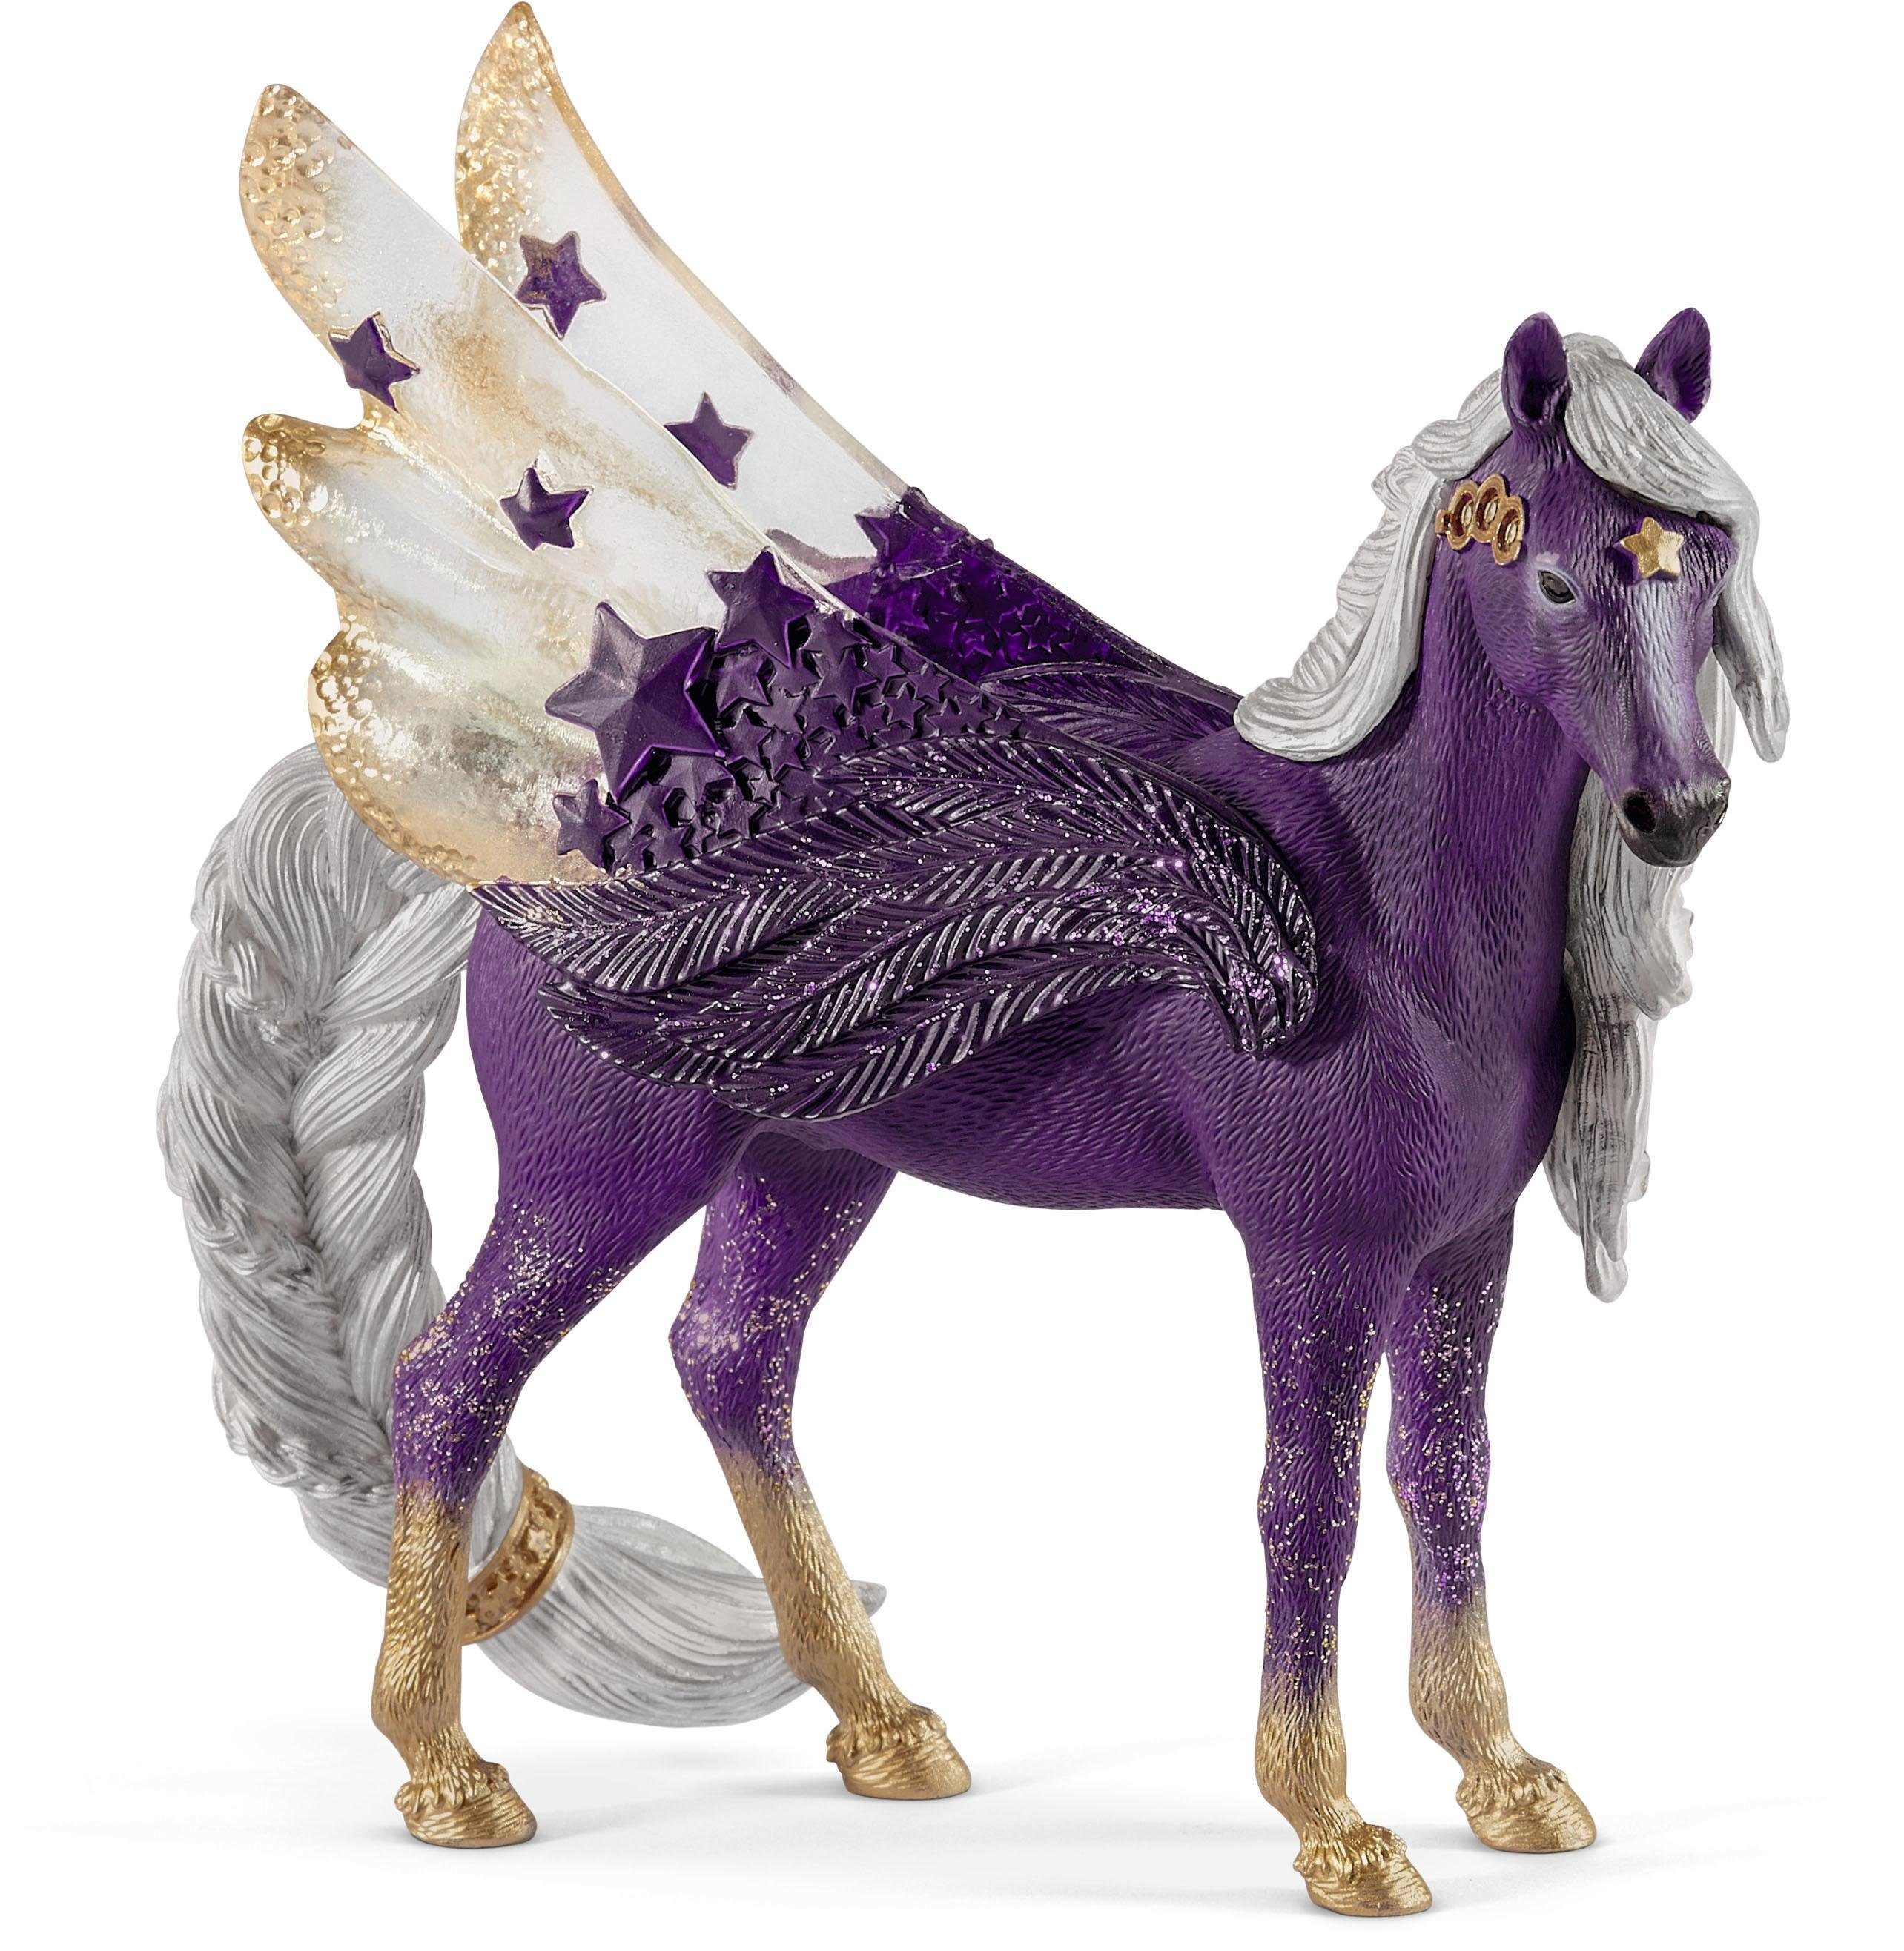 Image of Schleich 70579 - Bayala, Sternen Pegasus, Stute, Spielfigur, Tierfigur